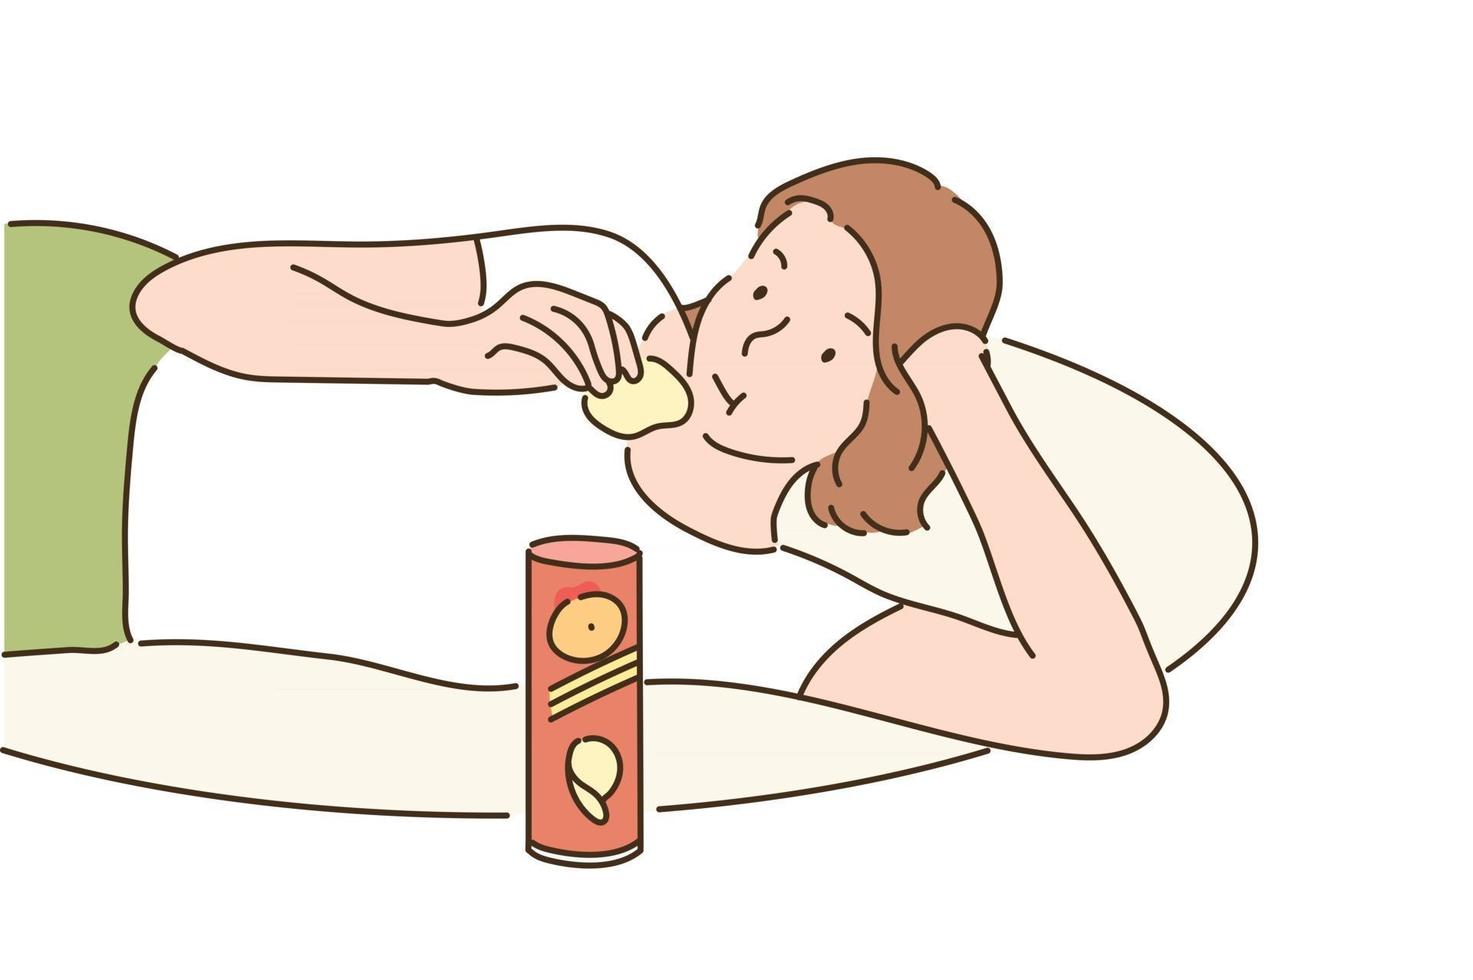 una ragazza è comodamente sdraiata su un cuscino e mangia patatine. illustrazioni di disegno vettoriale stile disegnato a mano.